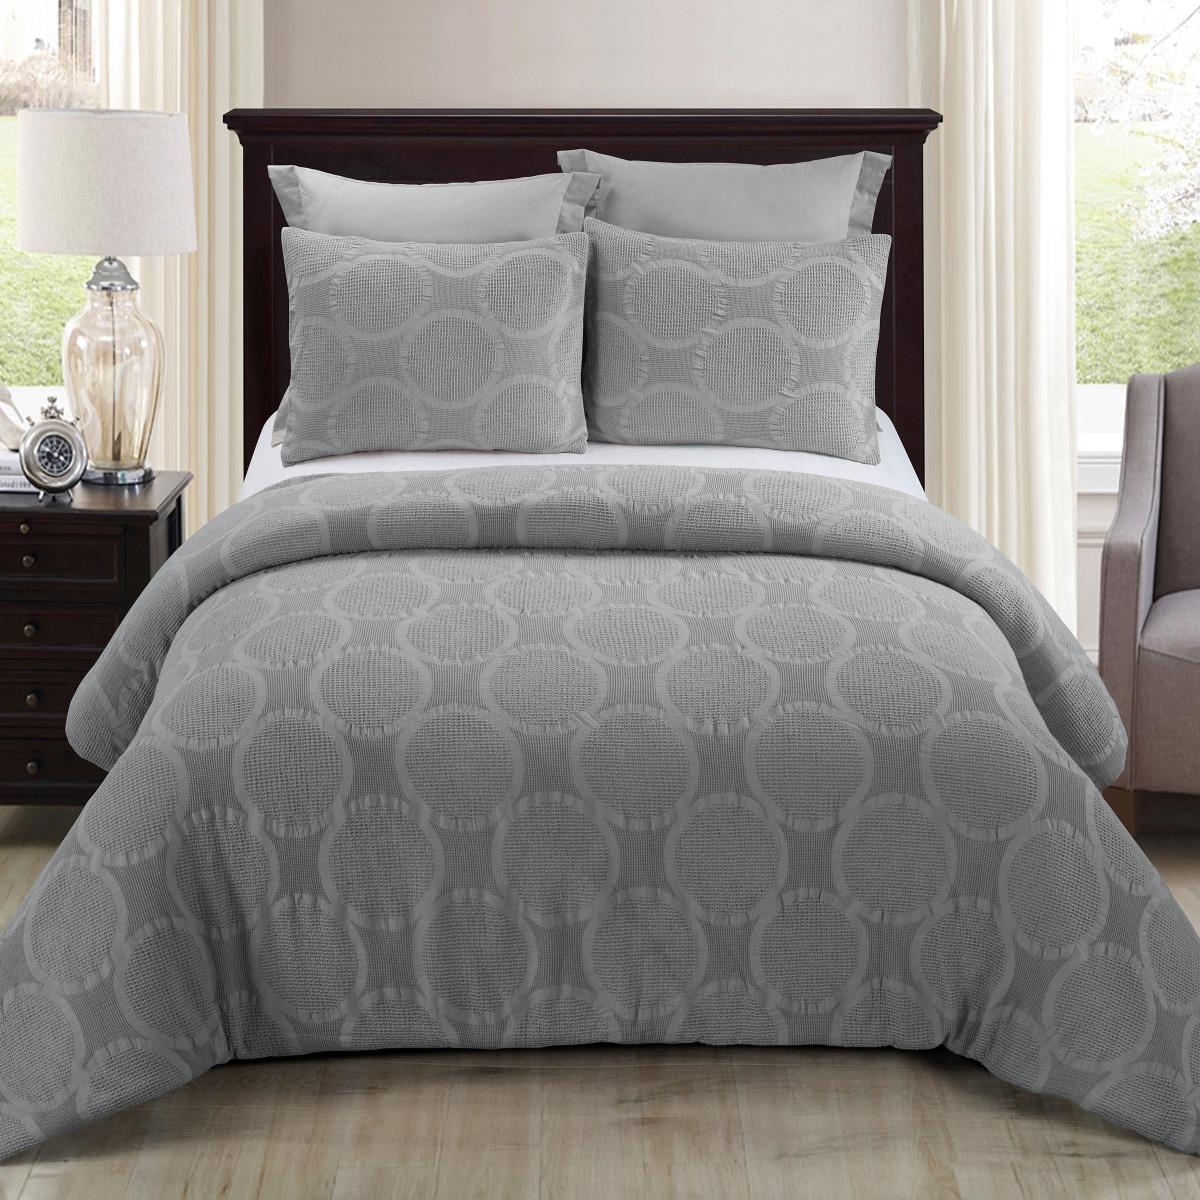 Y00422 Queen Size Comforter Set - Leon Grey